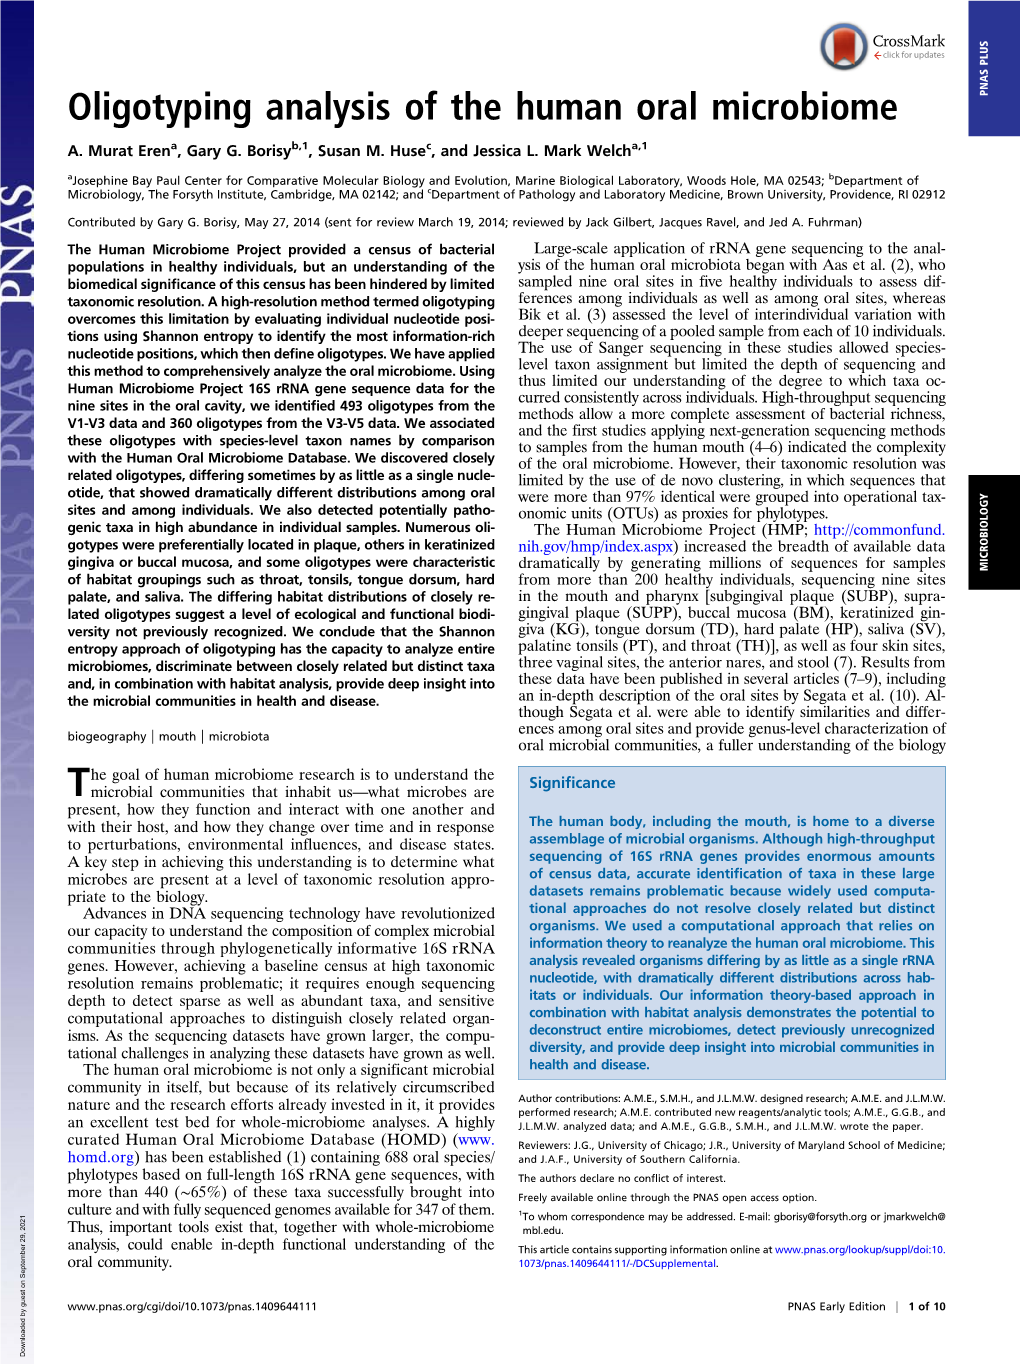 Oligotyping Analysis of the Human Oral Microbiome PNAS PLUS